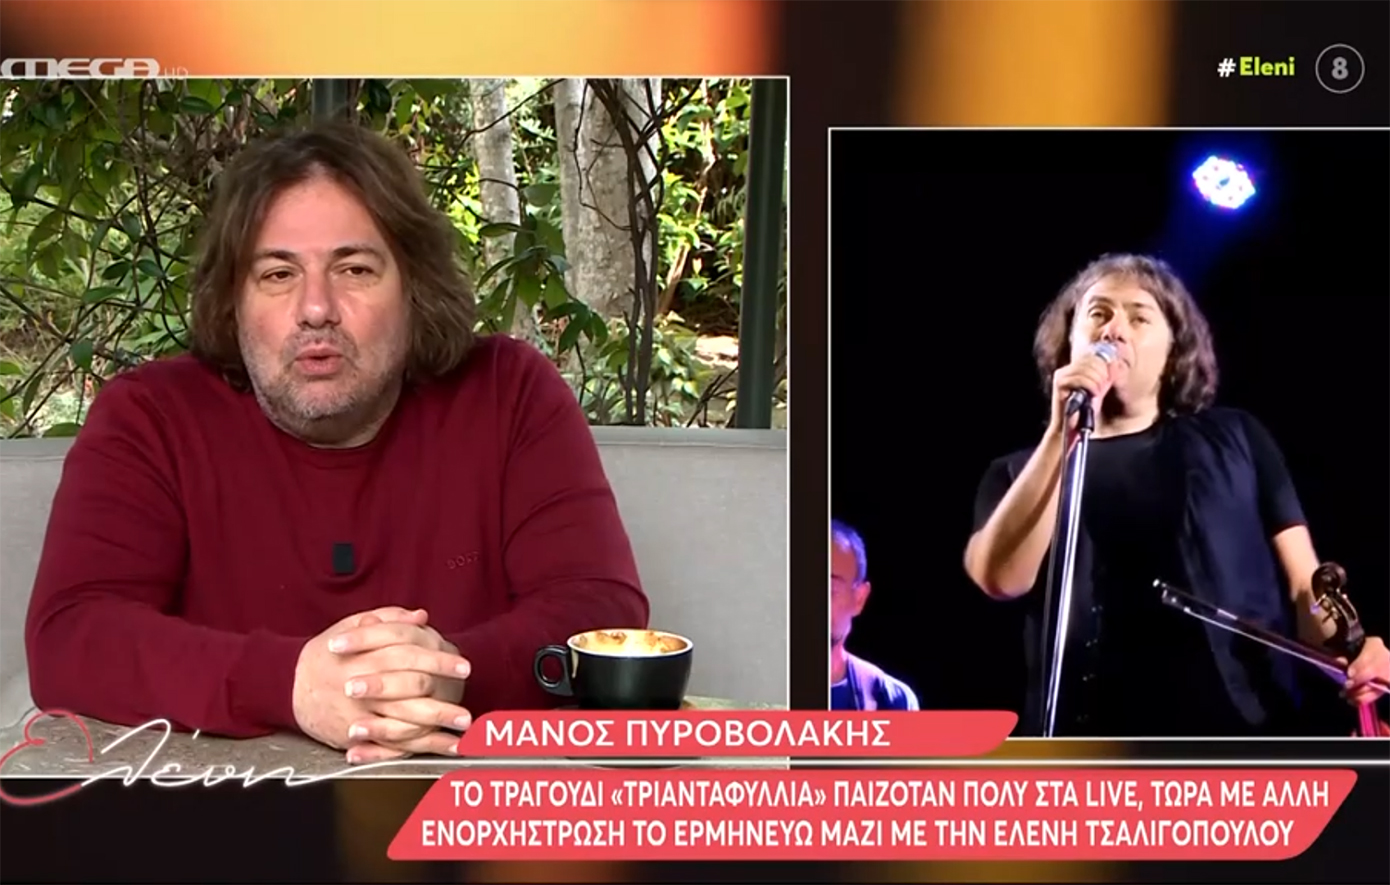 Μάνος Πυροβολάκης: Οι τραγουδιστές είμαστε σαν τις μετοχές &#8211; Η αξία μας ανεβοκατεβαίνει συνέχεια